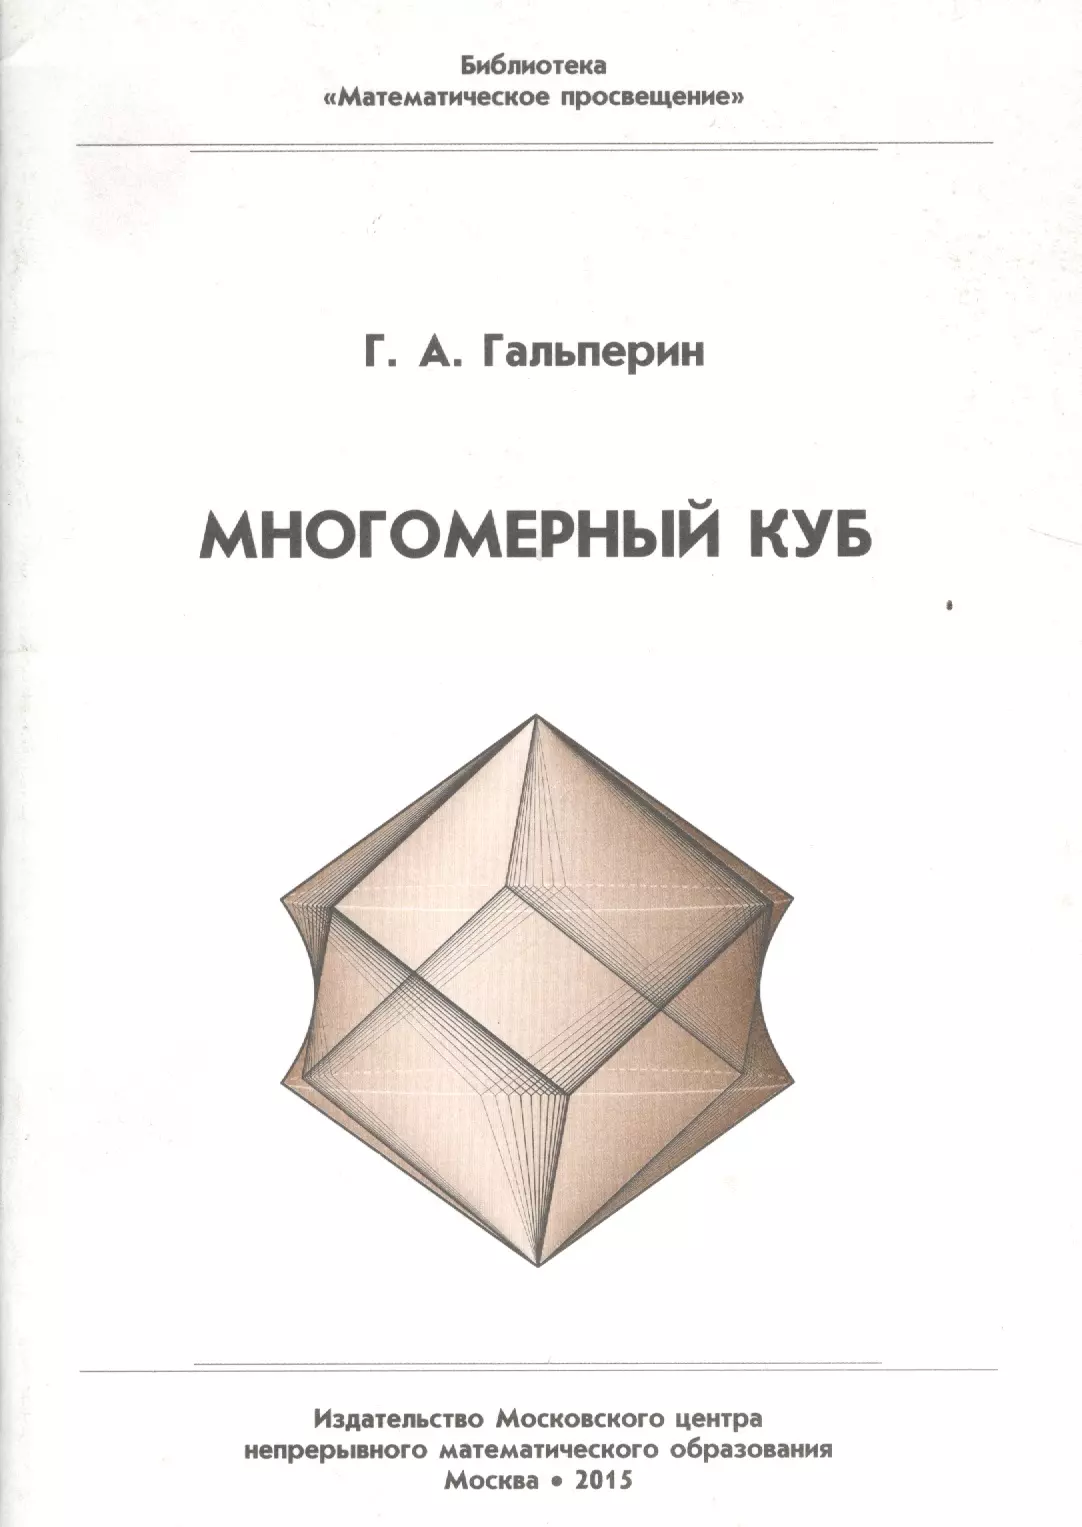 Математическая библиотека с. Библиотека математическое Просвещение. Многомерный куб. Книга куб. Четырехмерный куб.